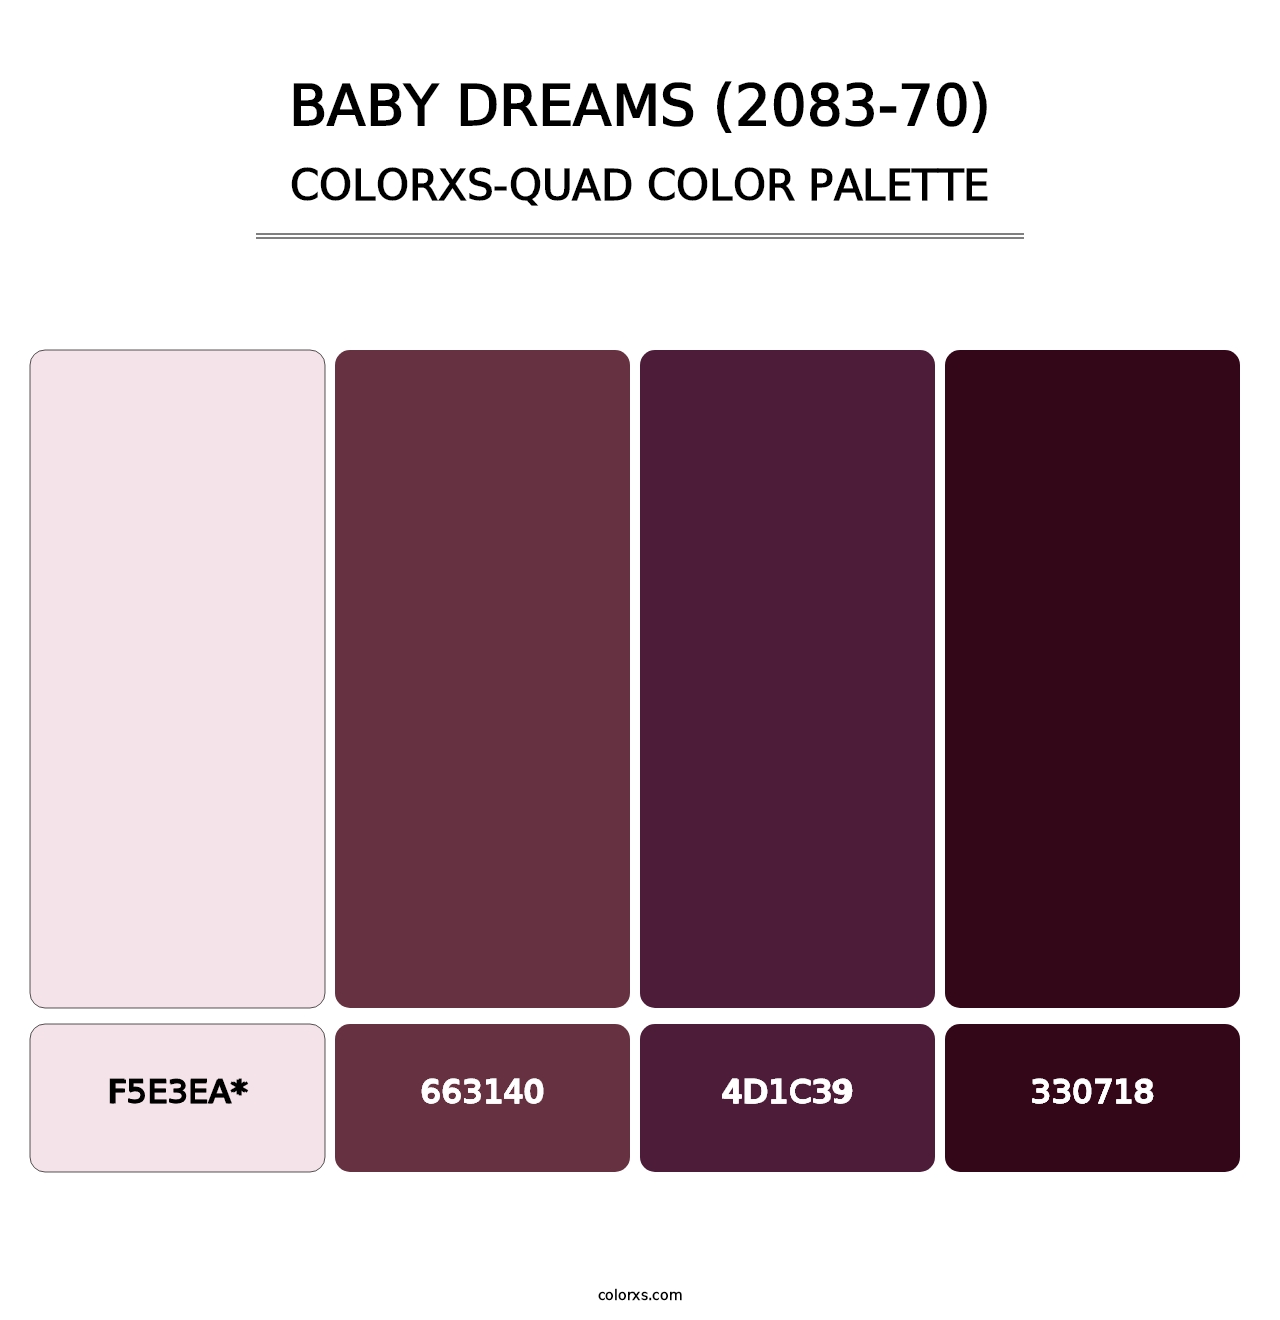 Baby Dreams (2083-70) - Colorxs Quad Palette